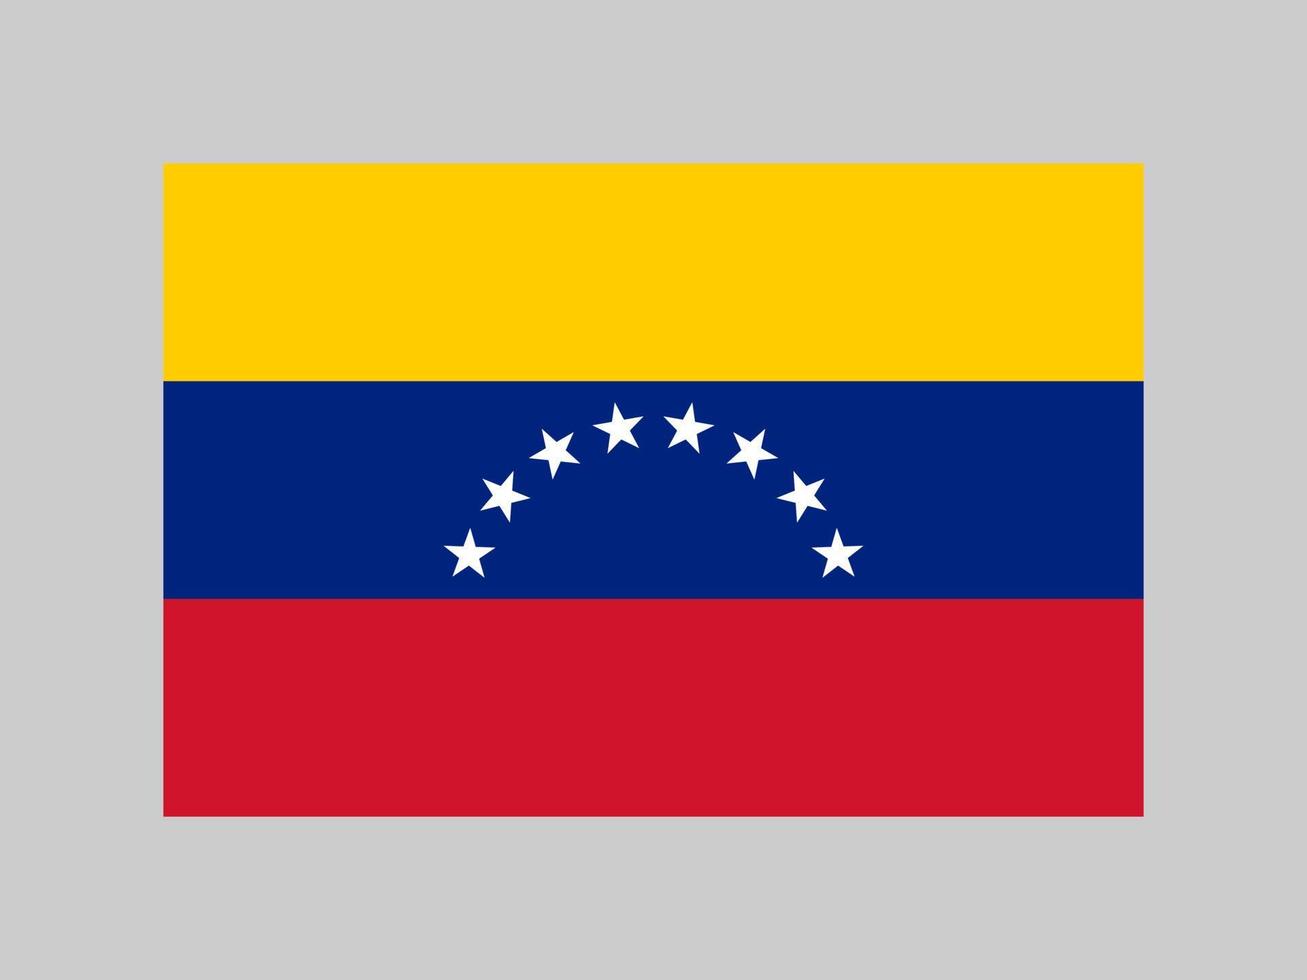 venezuelas flagga, officiella färger och proportioner. vektor illustration.